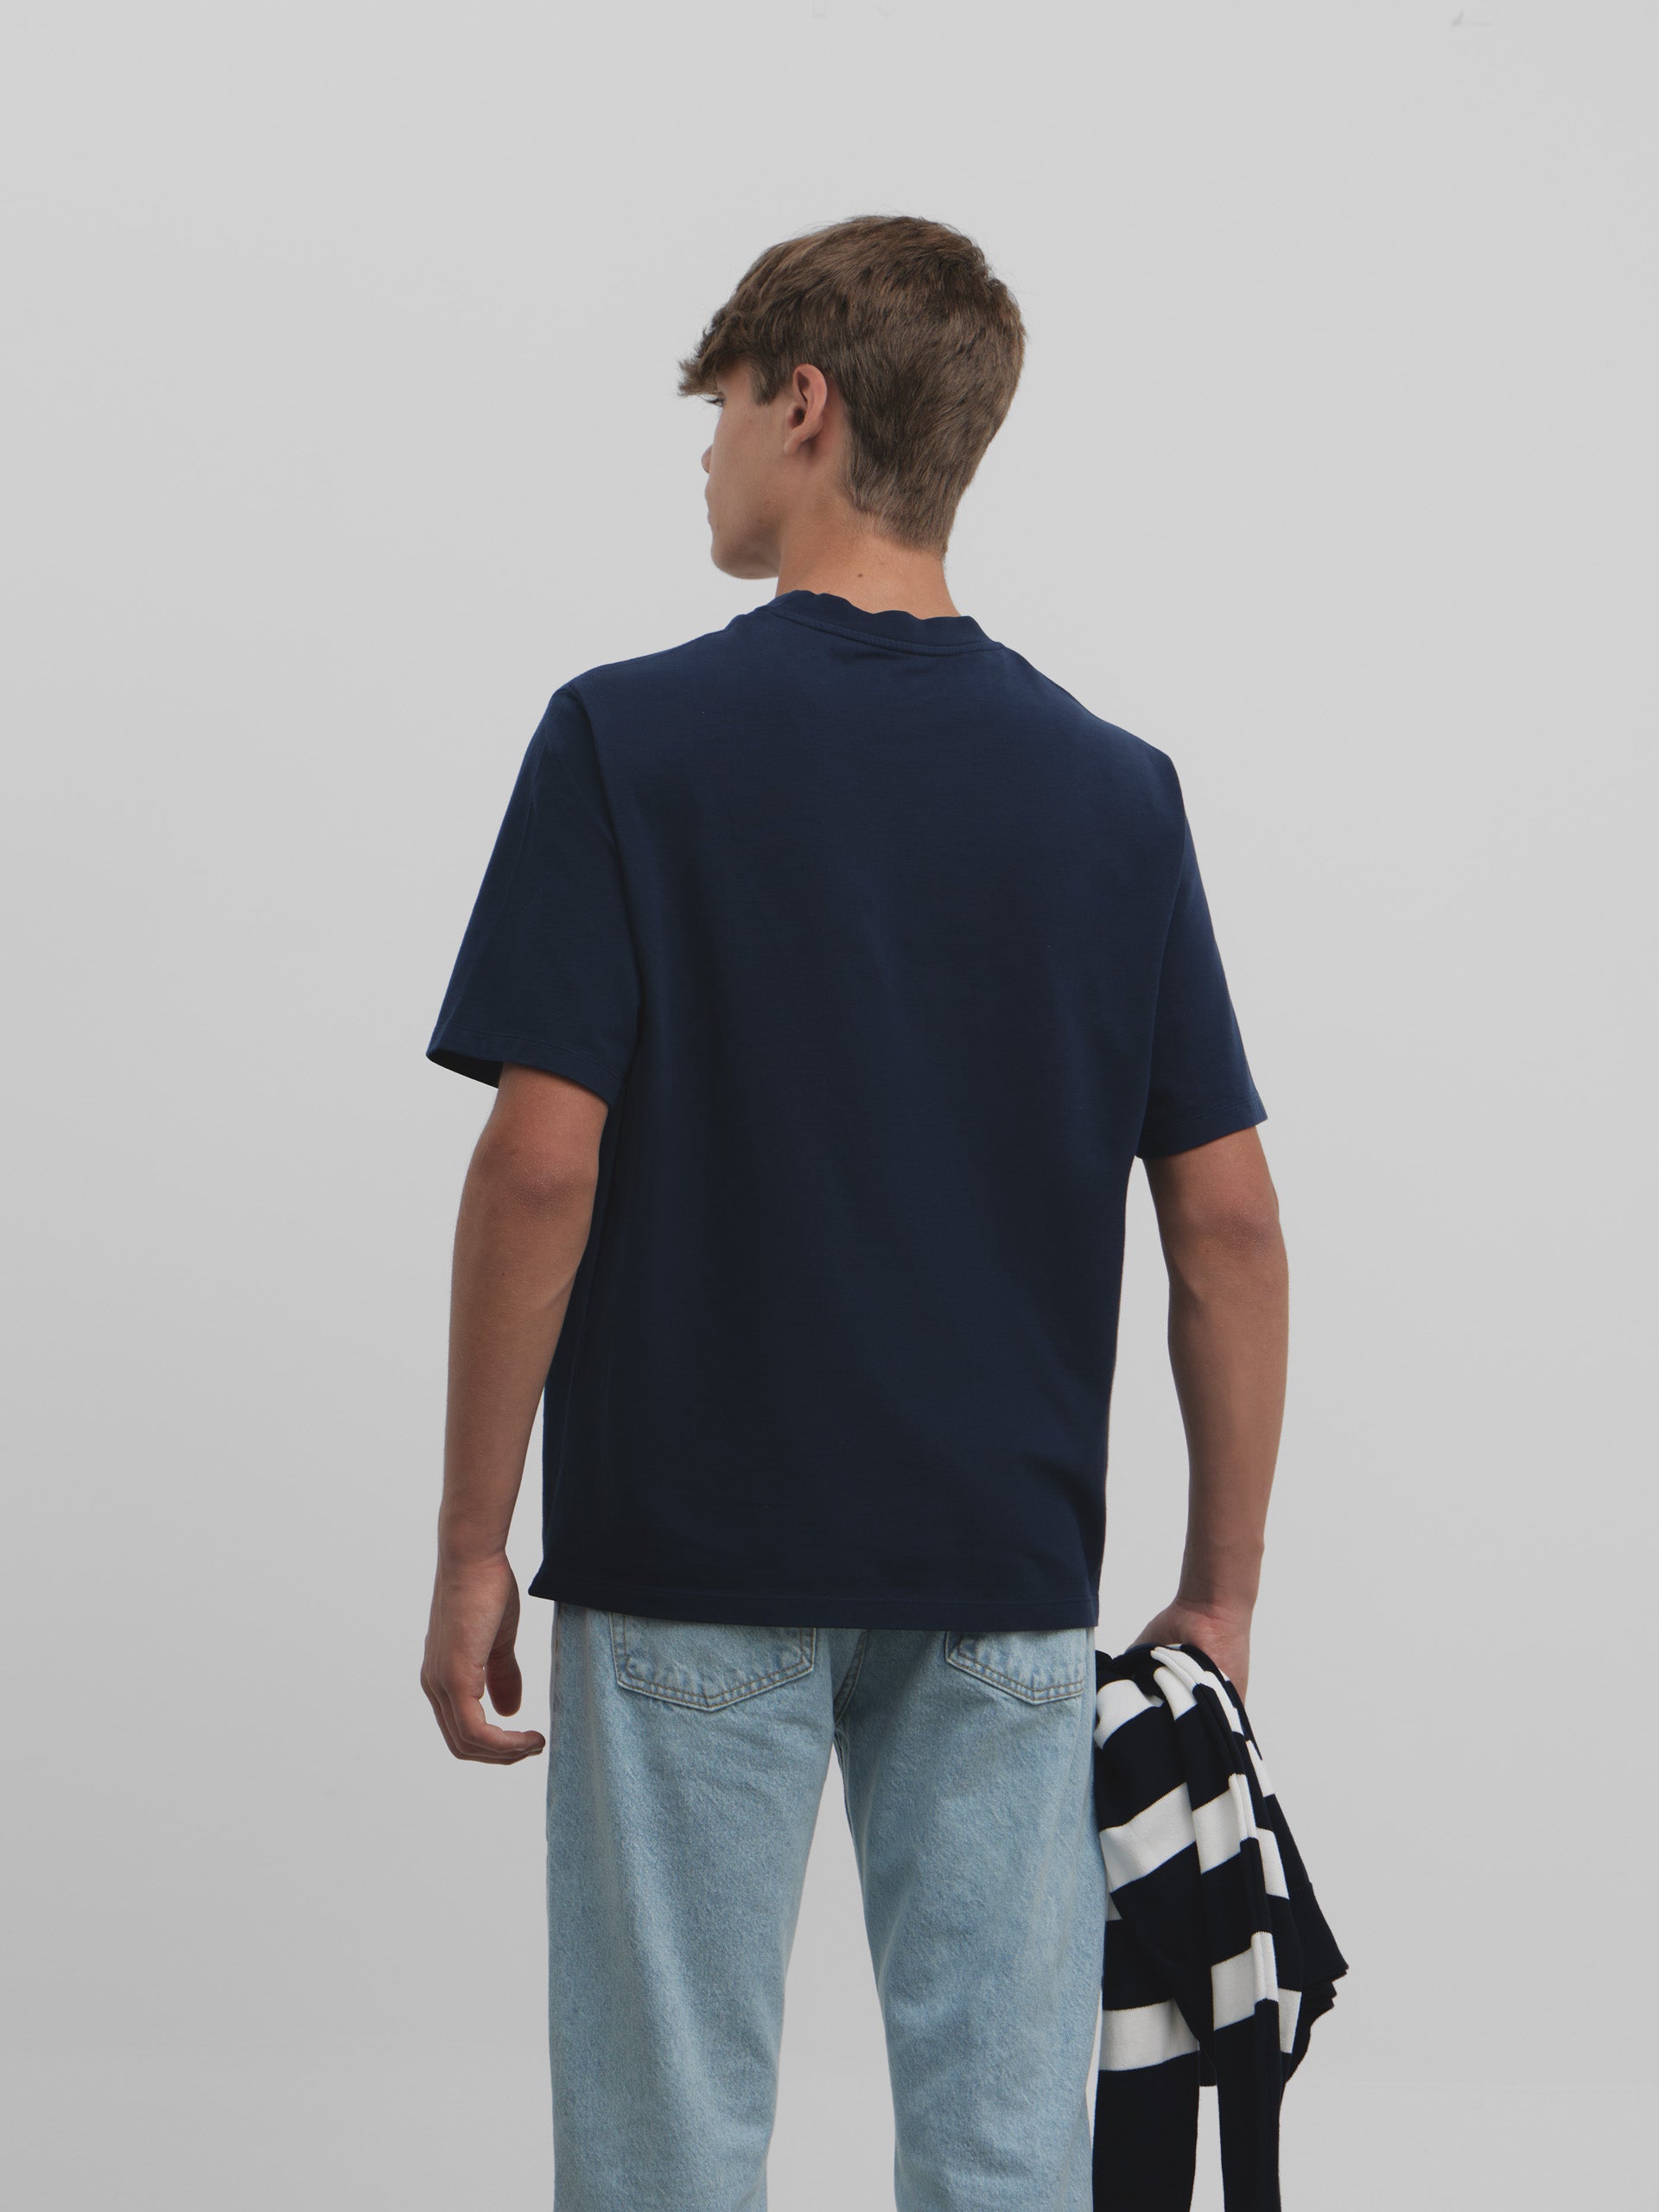 Camiseta comfort fit minilogo azul marino